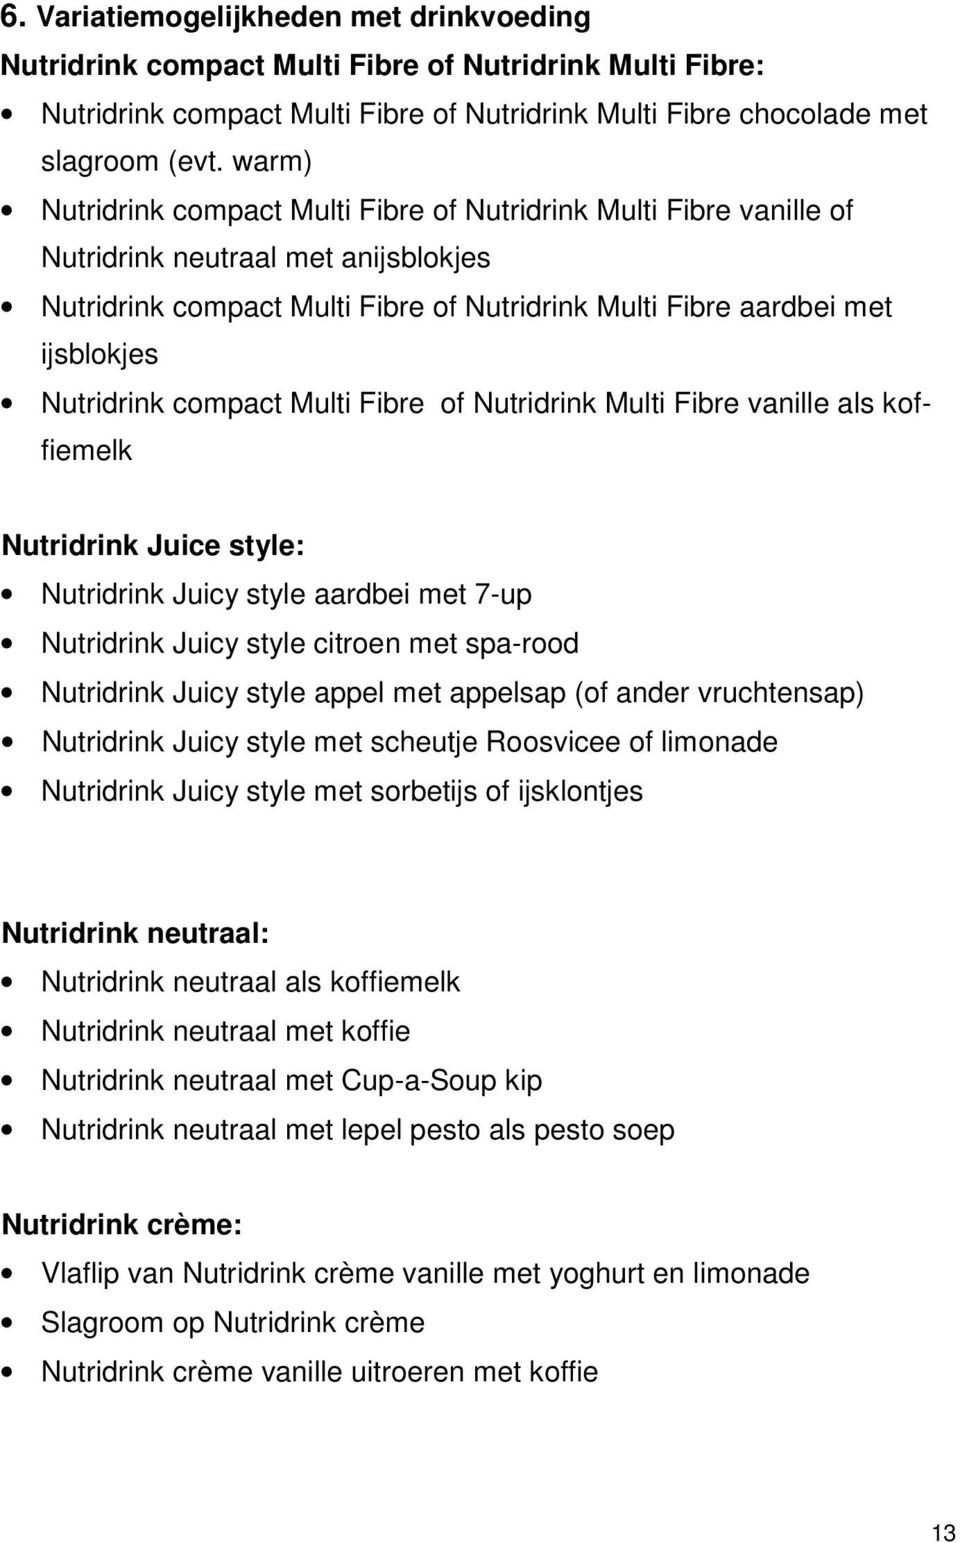 Nutridrink compact Multi Fibre of Nutridrink Multi Fibre vanille als koffiemelk Nutridrink Juice style: Nutridrink Juicy style aardbei met 7-up Nutridrink Juicy style citroen met spa-rood Nutridrink